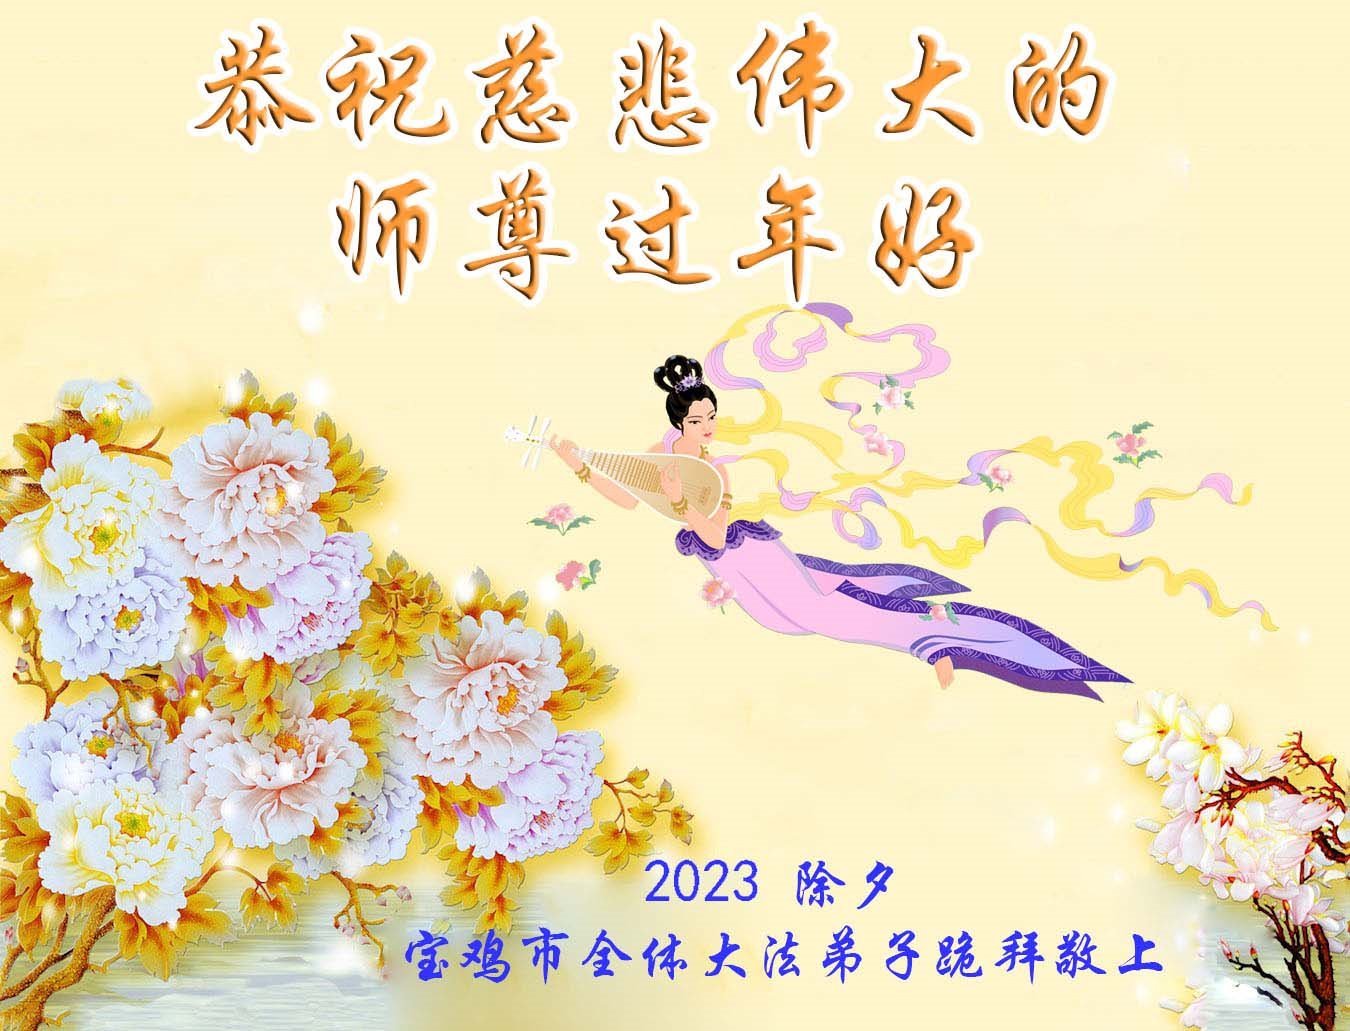 陝西、四川法輪功學員恭祝李洪志大師新年好(35條) | 新唐人电视台